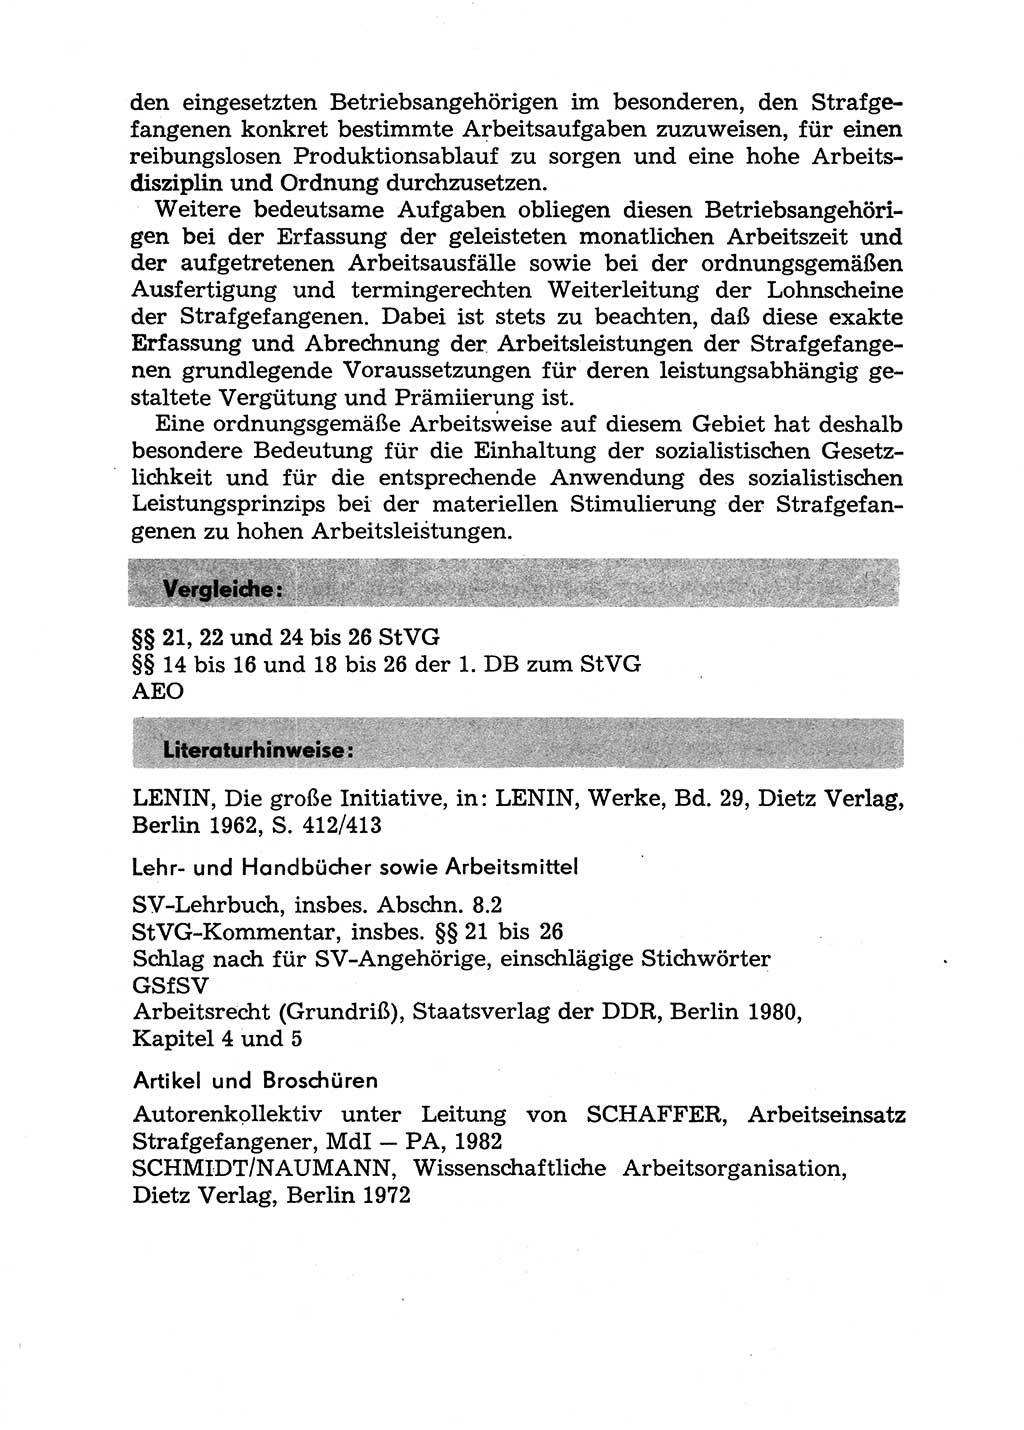 Handbuch für Betriebsangehörige, Abteilung Strafvollzug (SV) [Ministerium des Innern (MdI) Deutsche Demokratische Republik (DDR)] 1981, Seite 53 (Hb. BA Abt. SV MdI DDR 1981, S. 53)